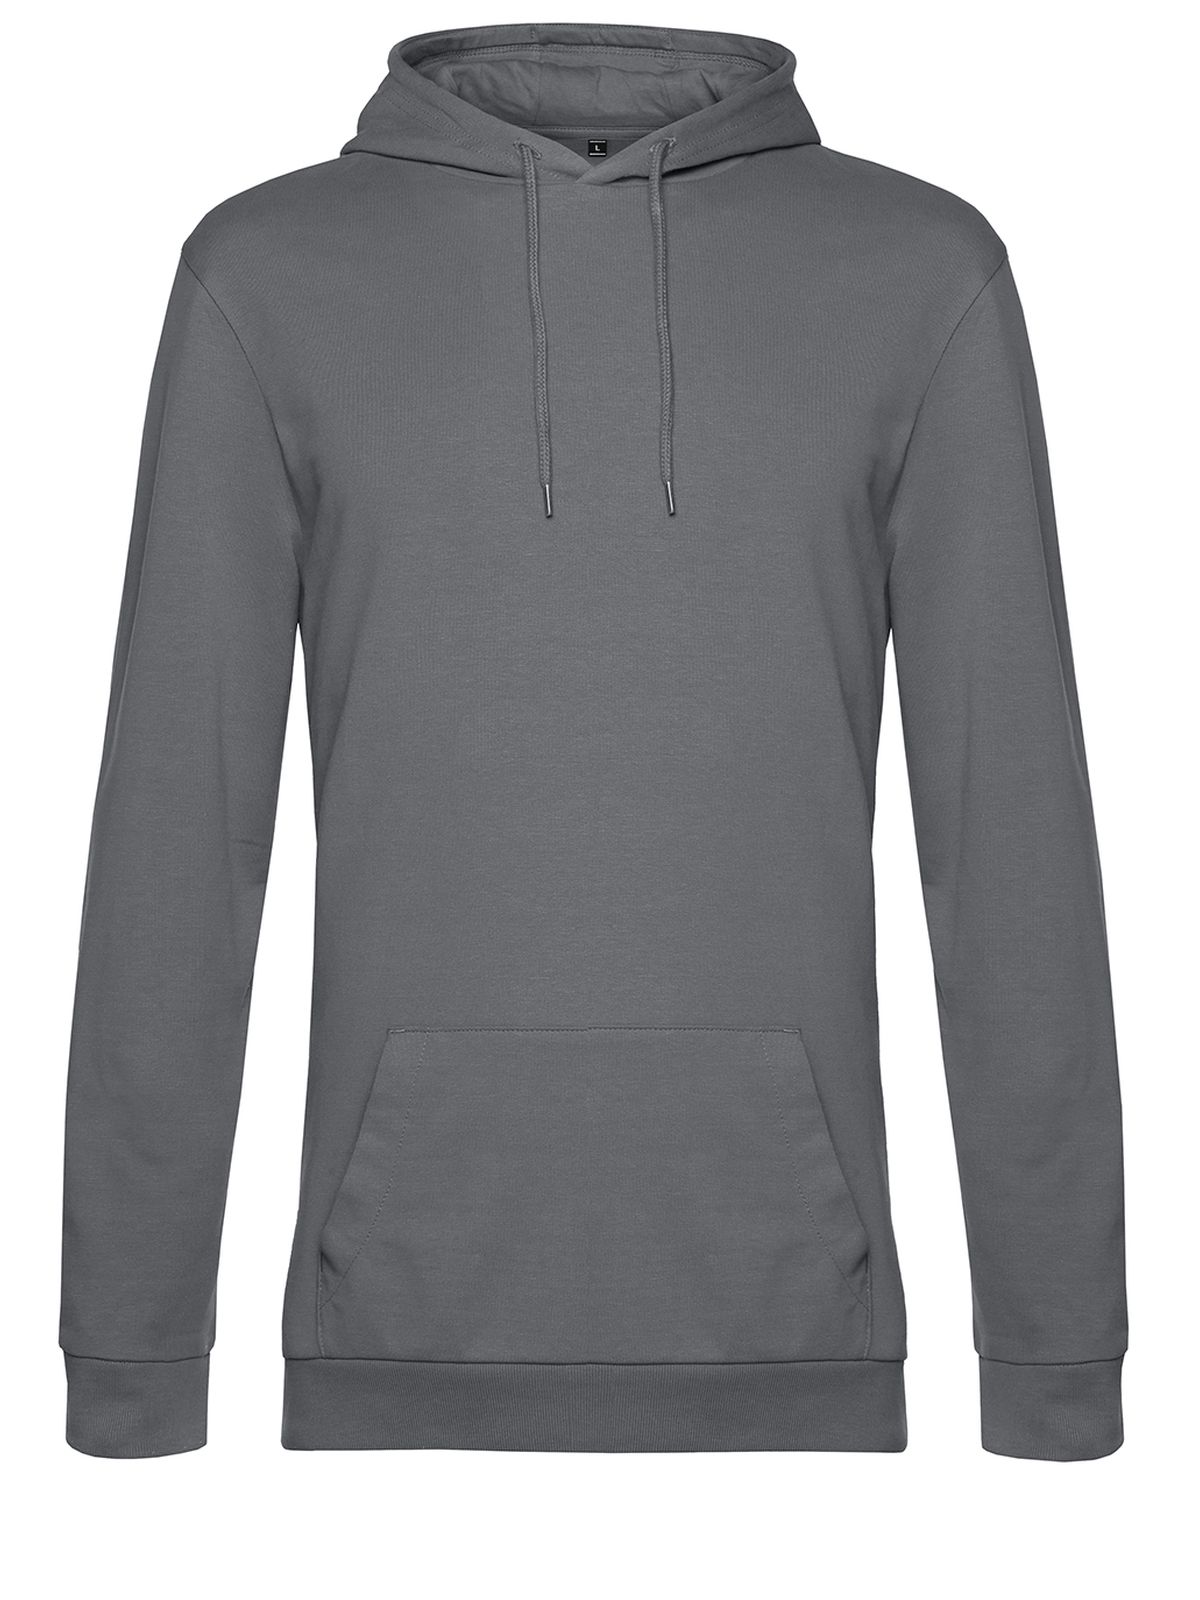 hoodie-elephant-grey.webp